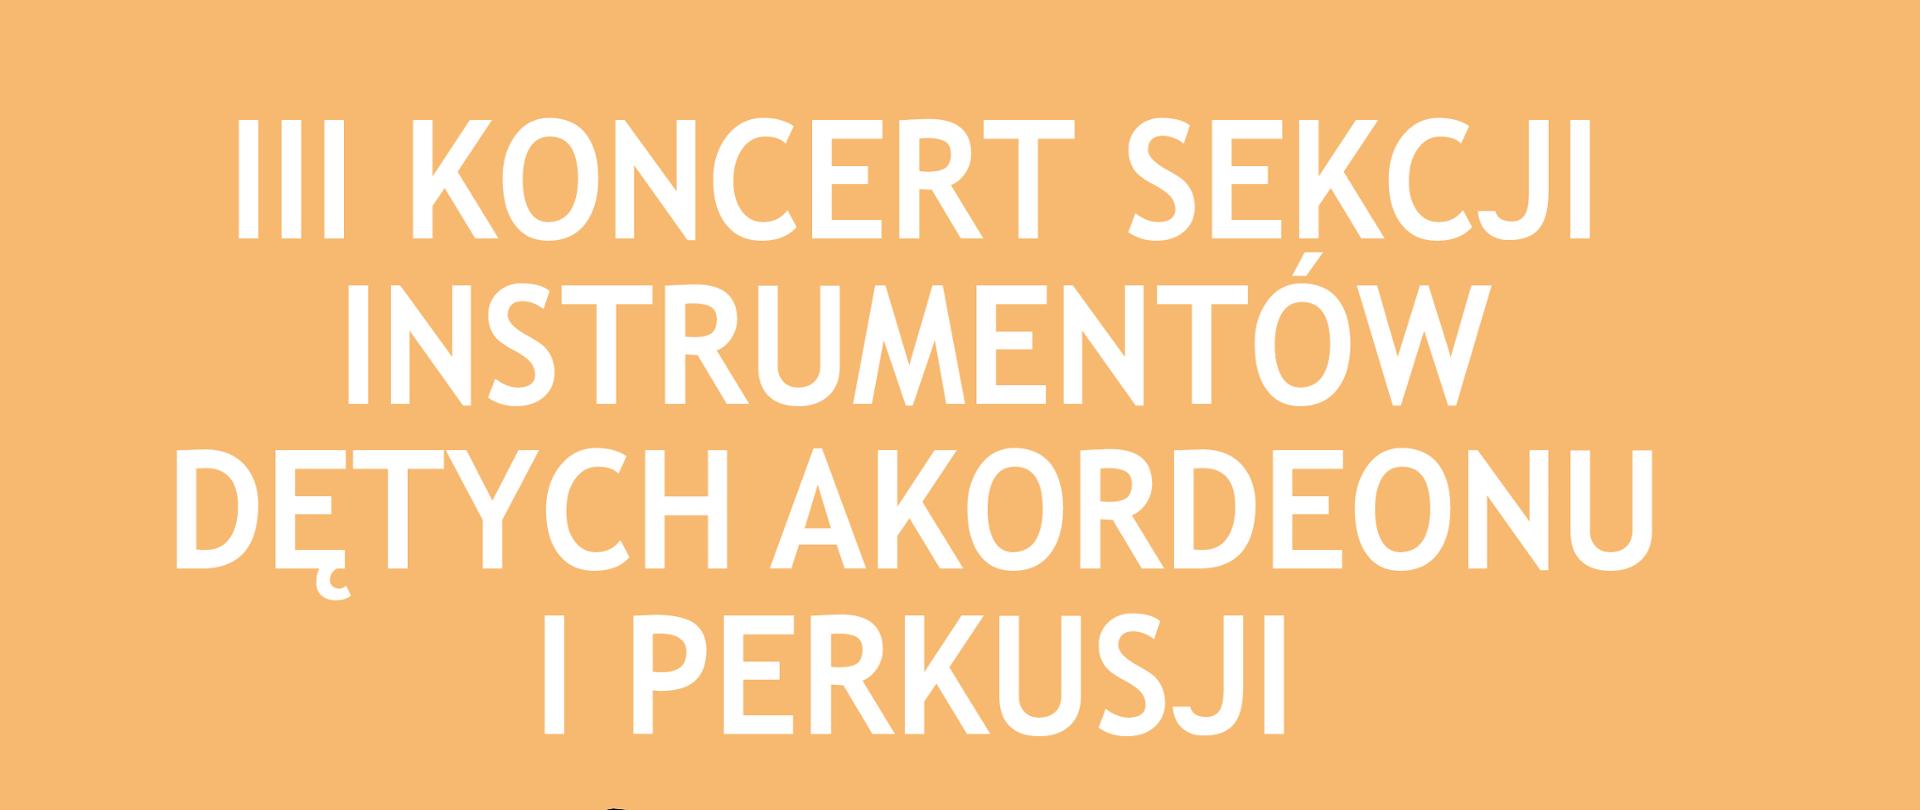 Plakat z wydarzeniem - III Koncert Sekcji Instrumentów Dętych, Akordeonu i Perkusji, plakat znajduje się na tle naprzemiennie pudrowy róż, beż, w tle znajduje się również szkic trąbki. Koncert odbędzie się 10 marca 2023r. w sali koncertowej ZPSM w Dębicy